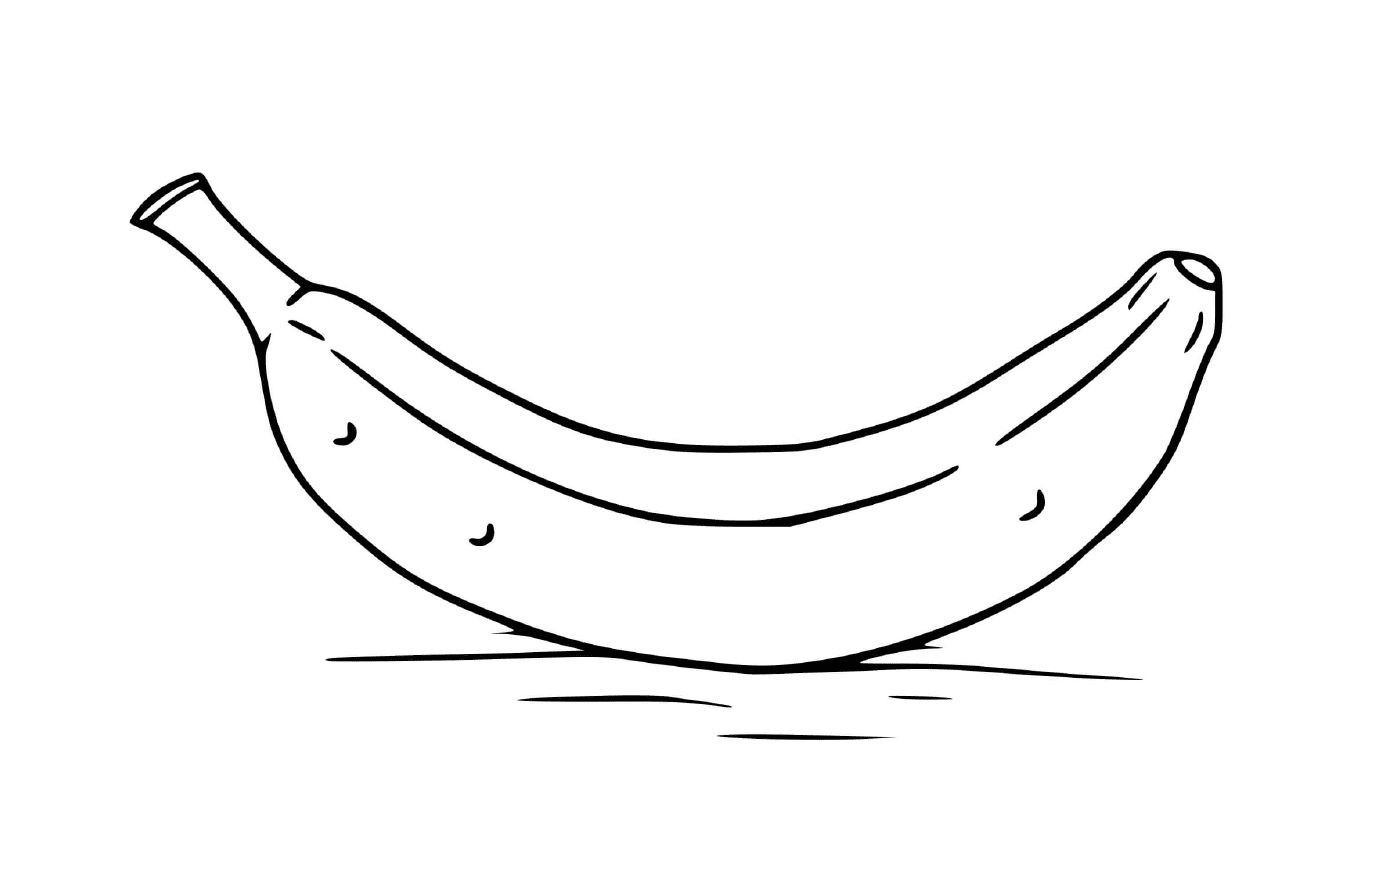  Une grappe de bananes sur une table